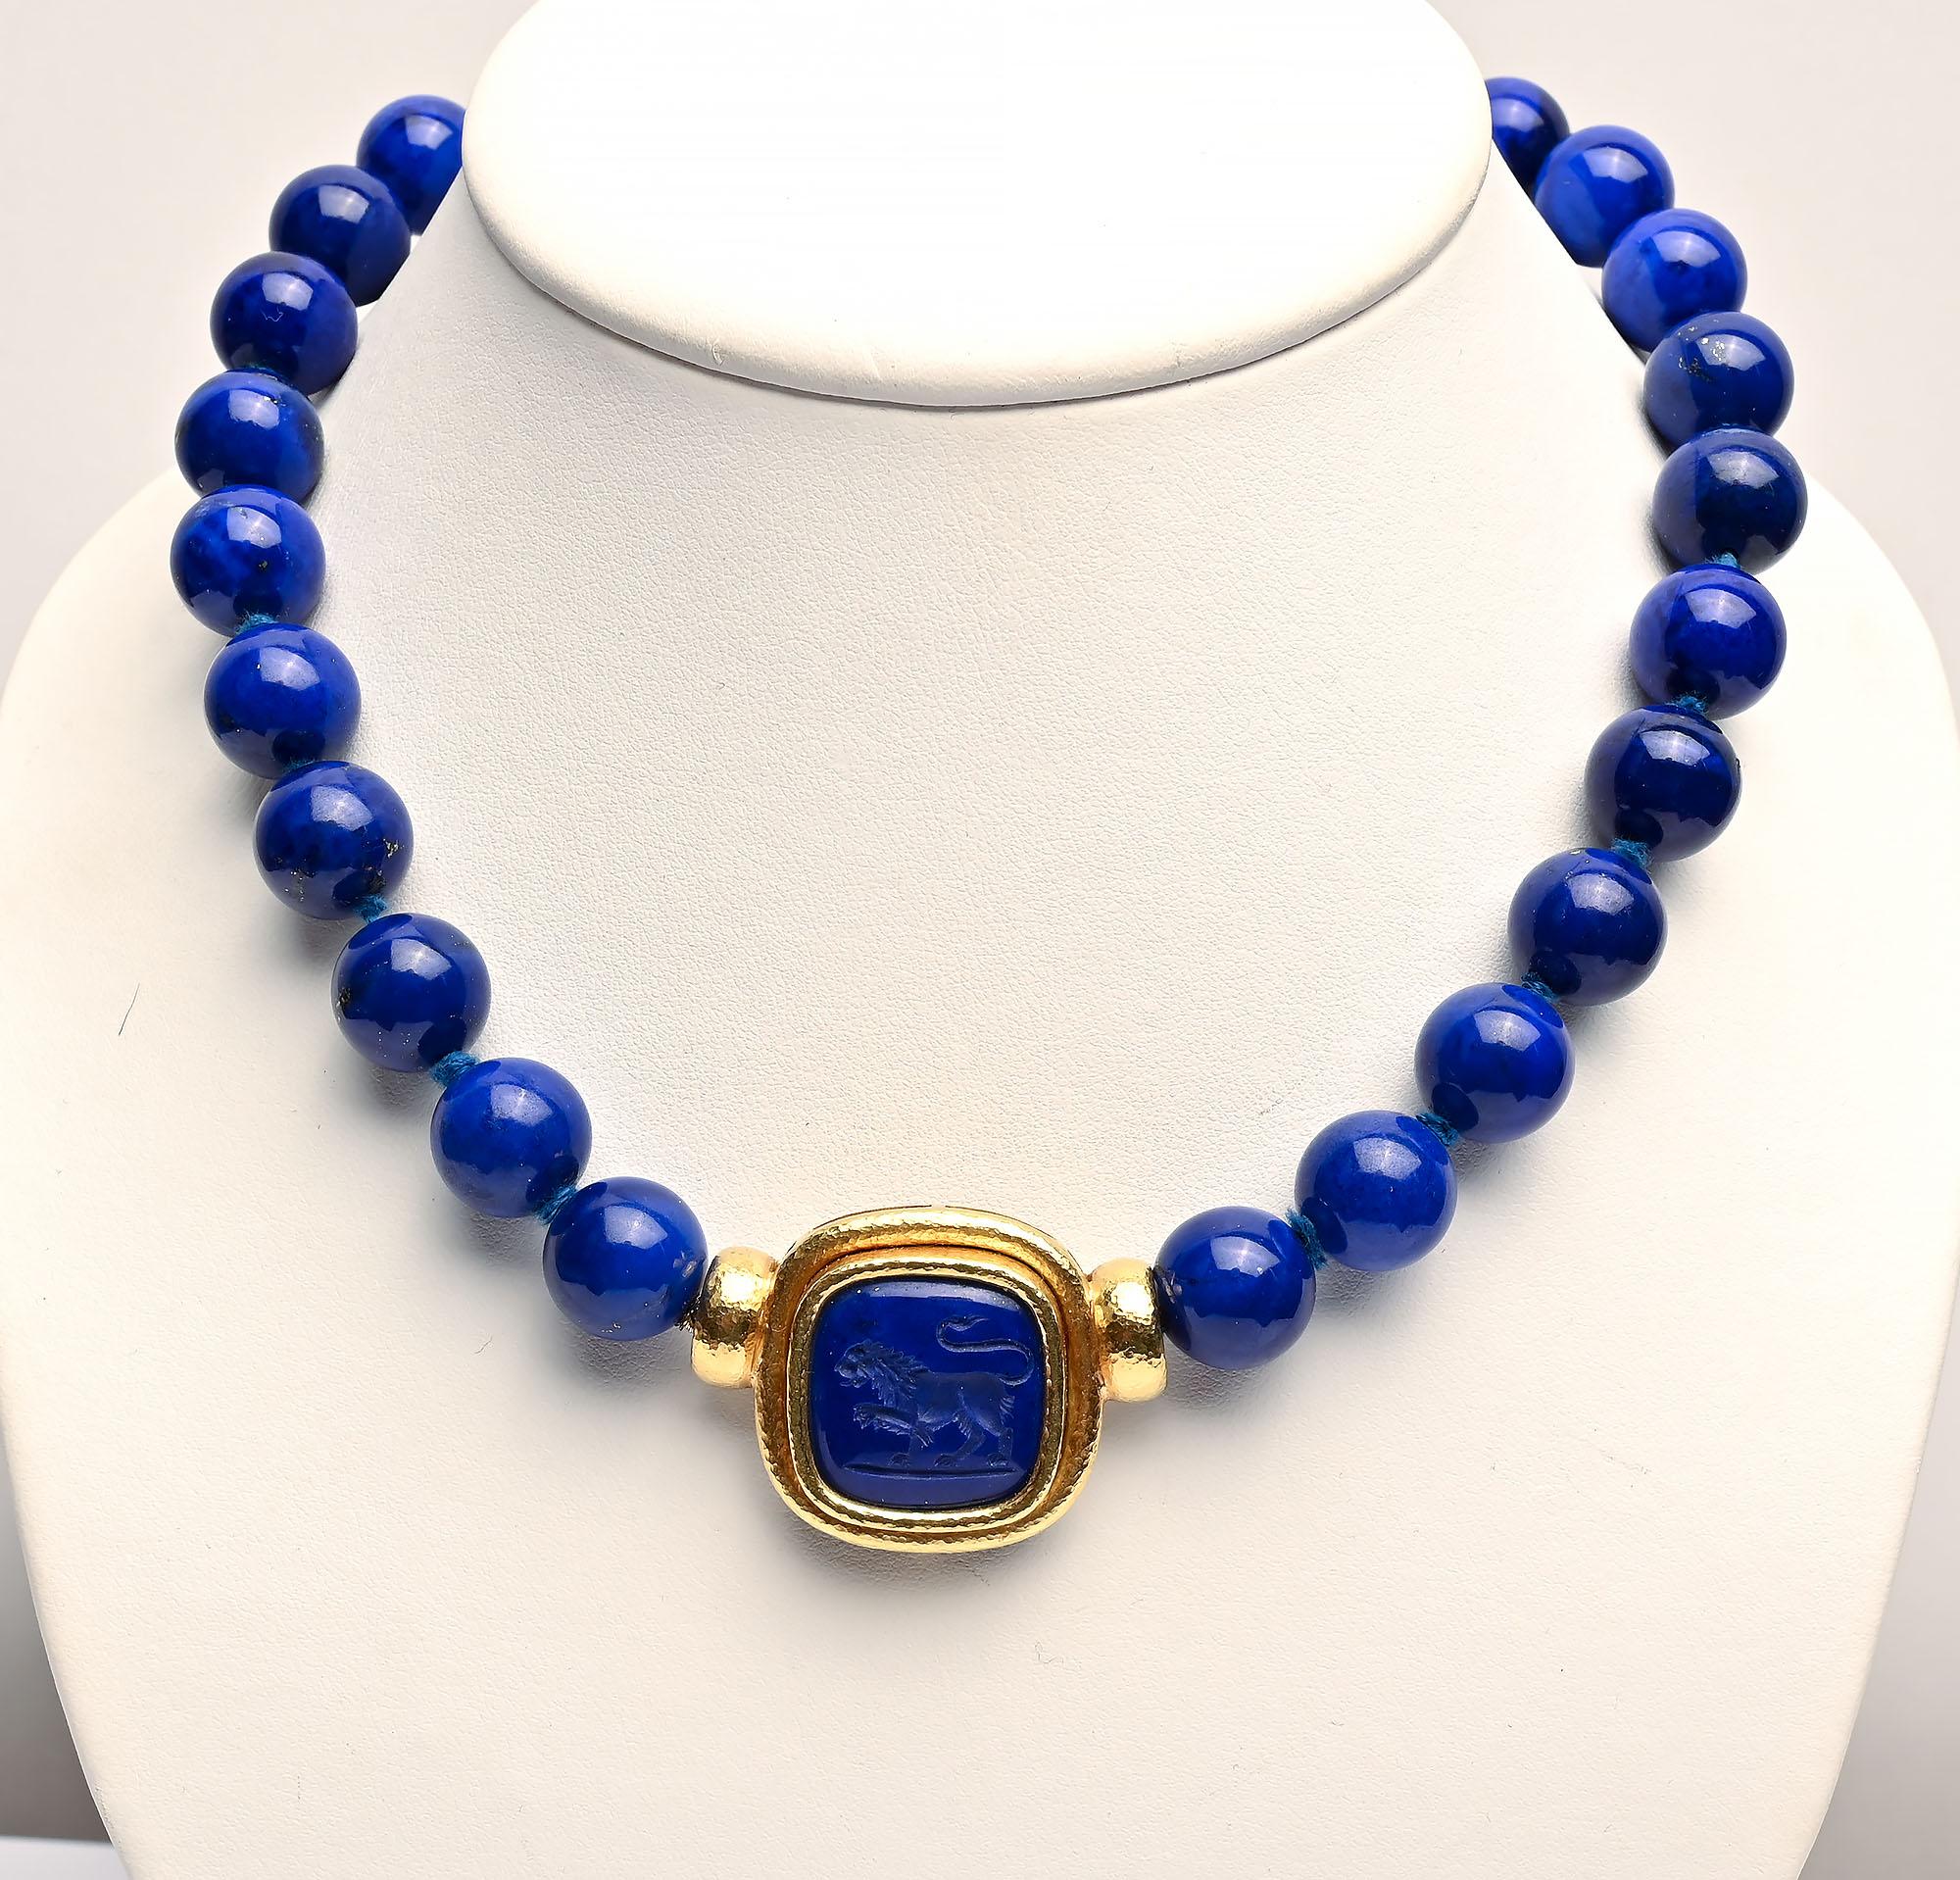 L'étonnante Elizabeth Locke  Collier avec des perles de lapis-lazuli de couleur brillante qui mesurent environ 12,5 mm. . Le fermoir est un médaillon avec un lion. Il peut être échangé avec d'autres pendentifs Locke. Le collier mesure 18 pouces, y